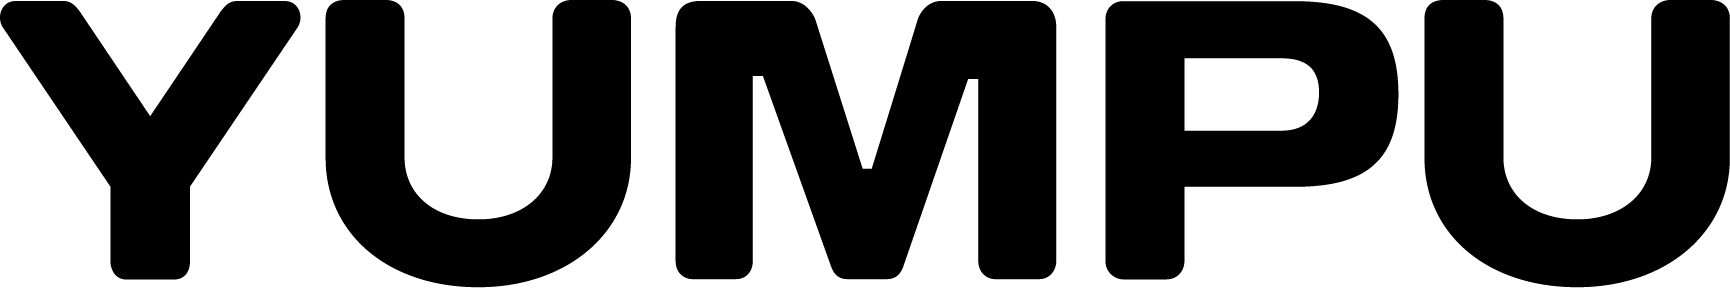 Yumpu-Logo RGB